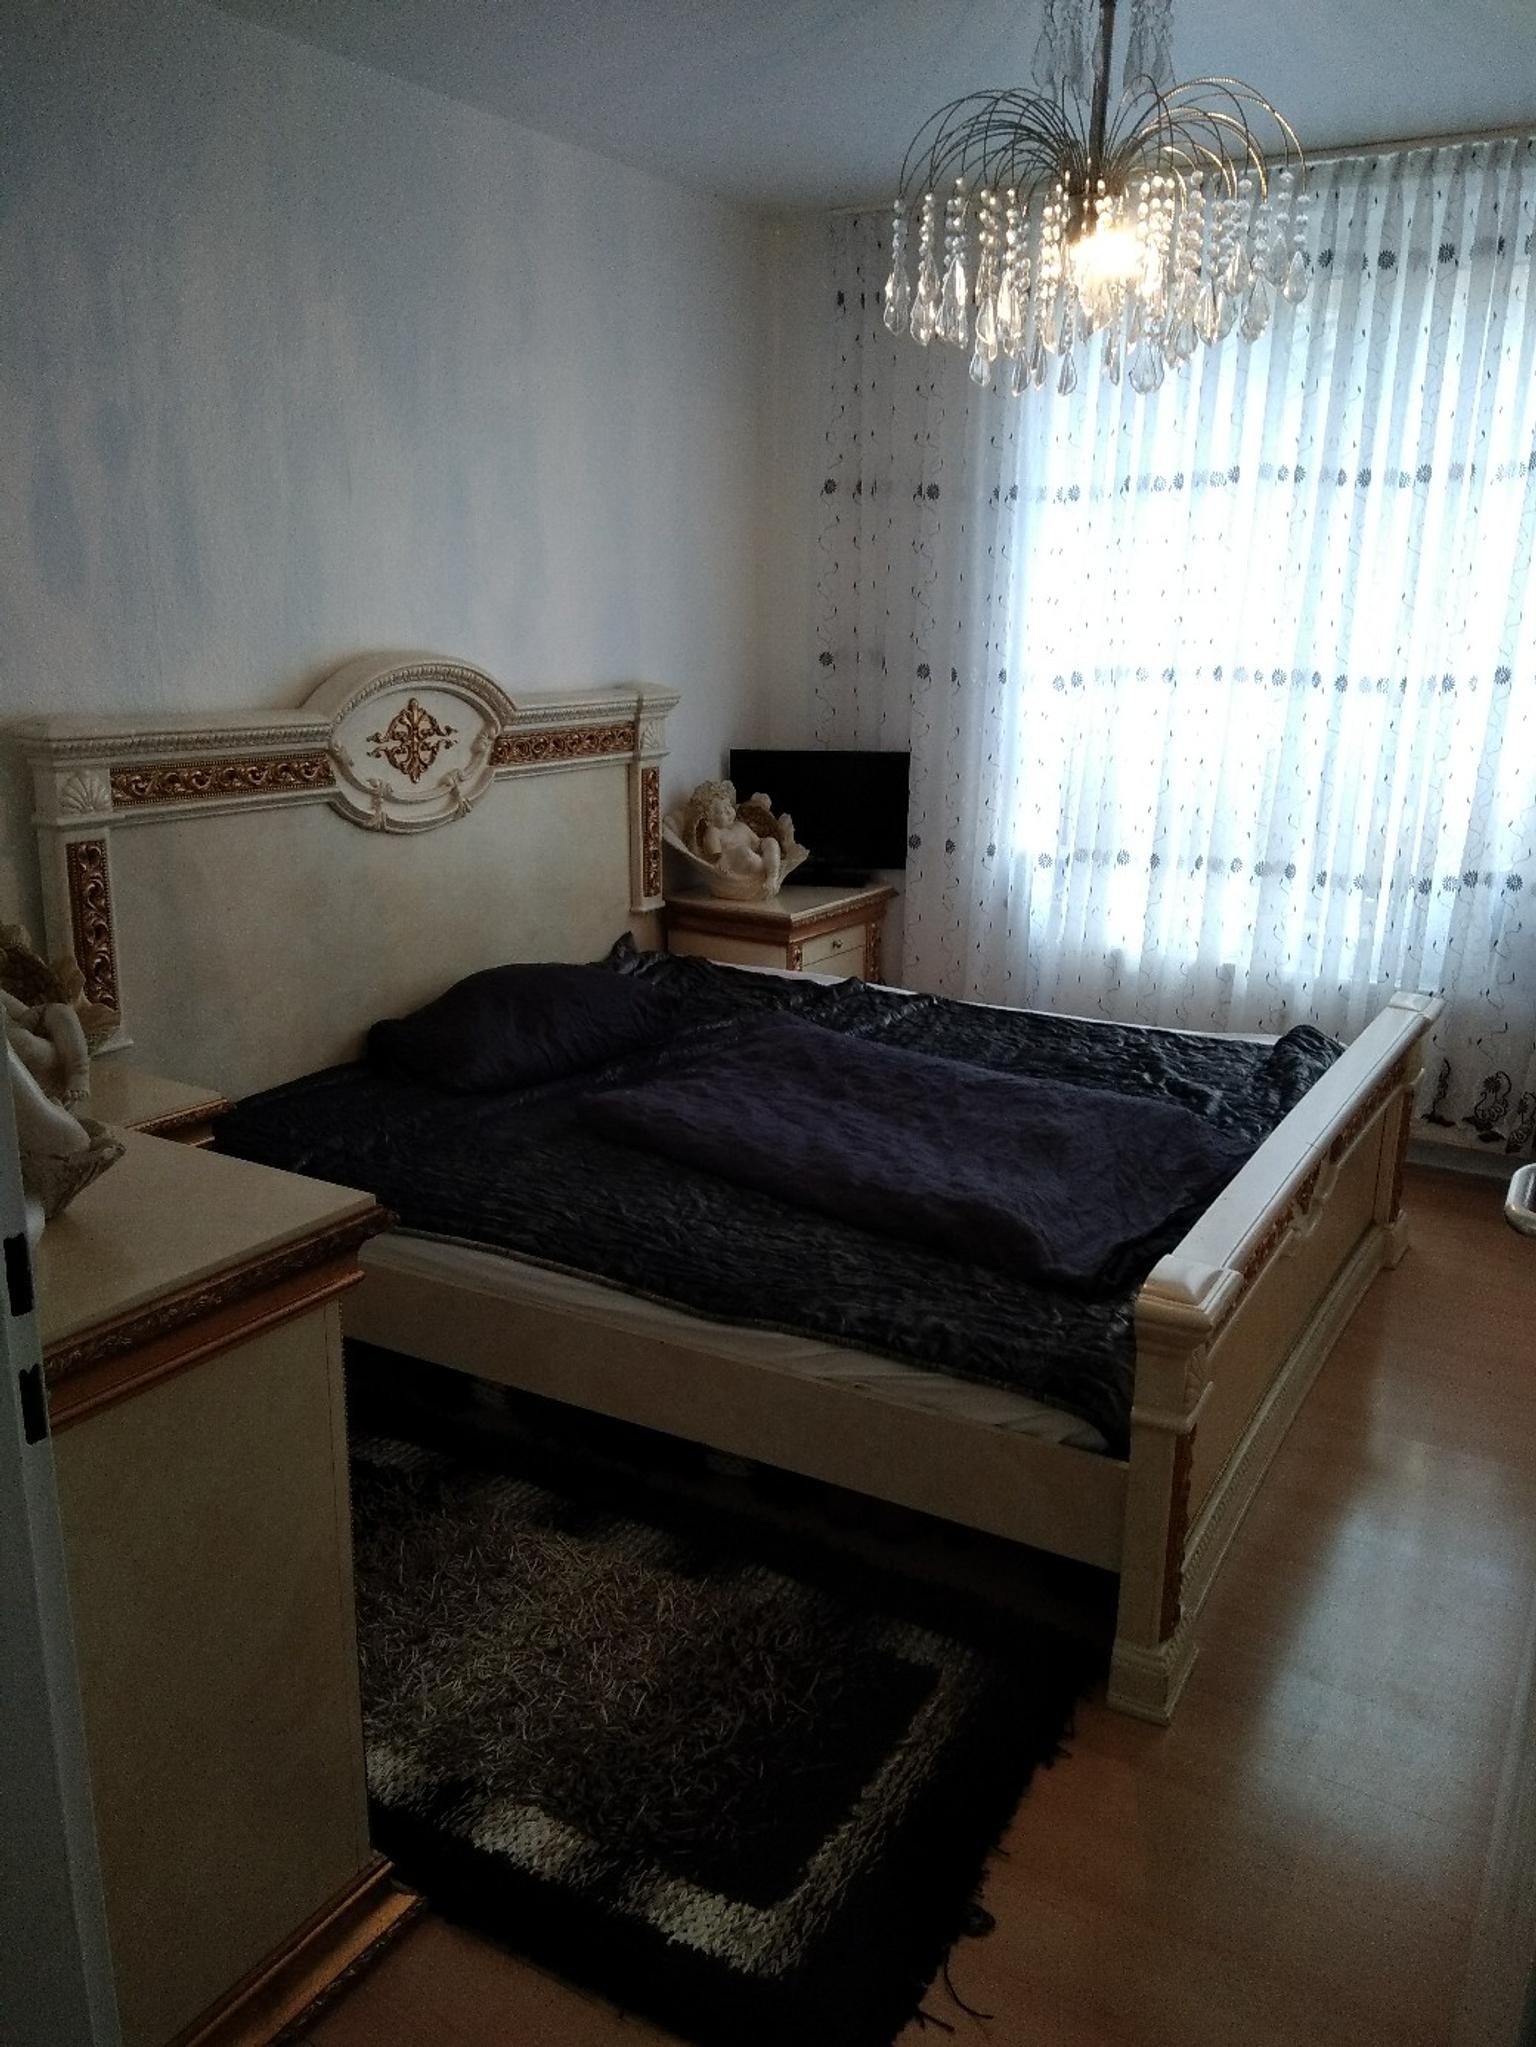 Schlafzimmer Dekoration In 12051 Neukolln For 800 00 For